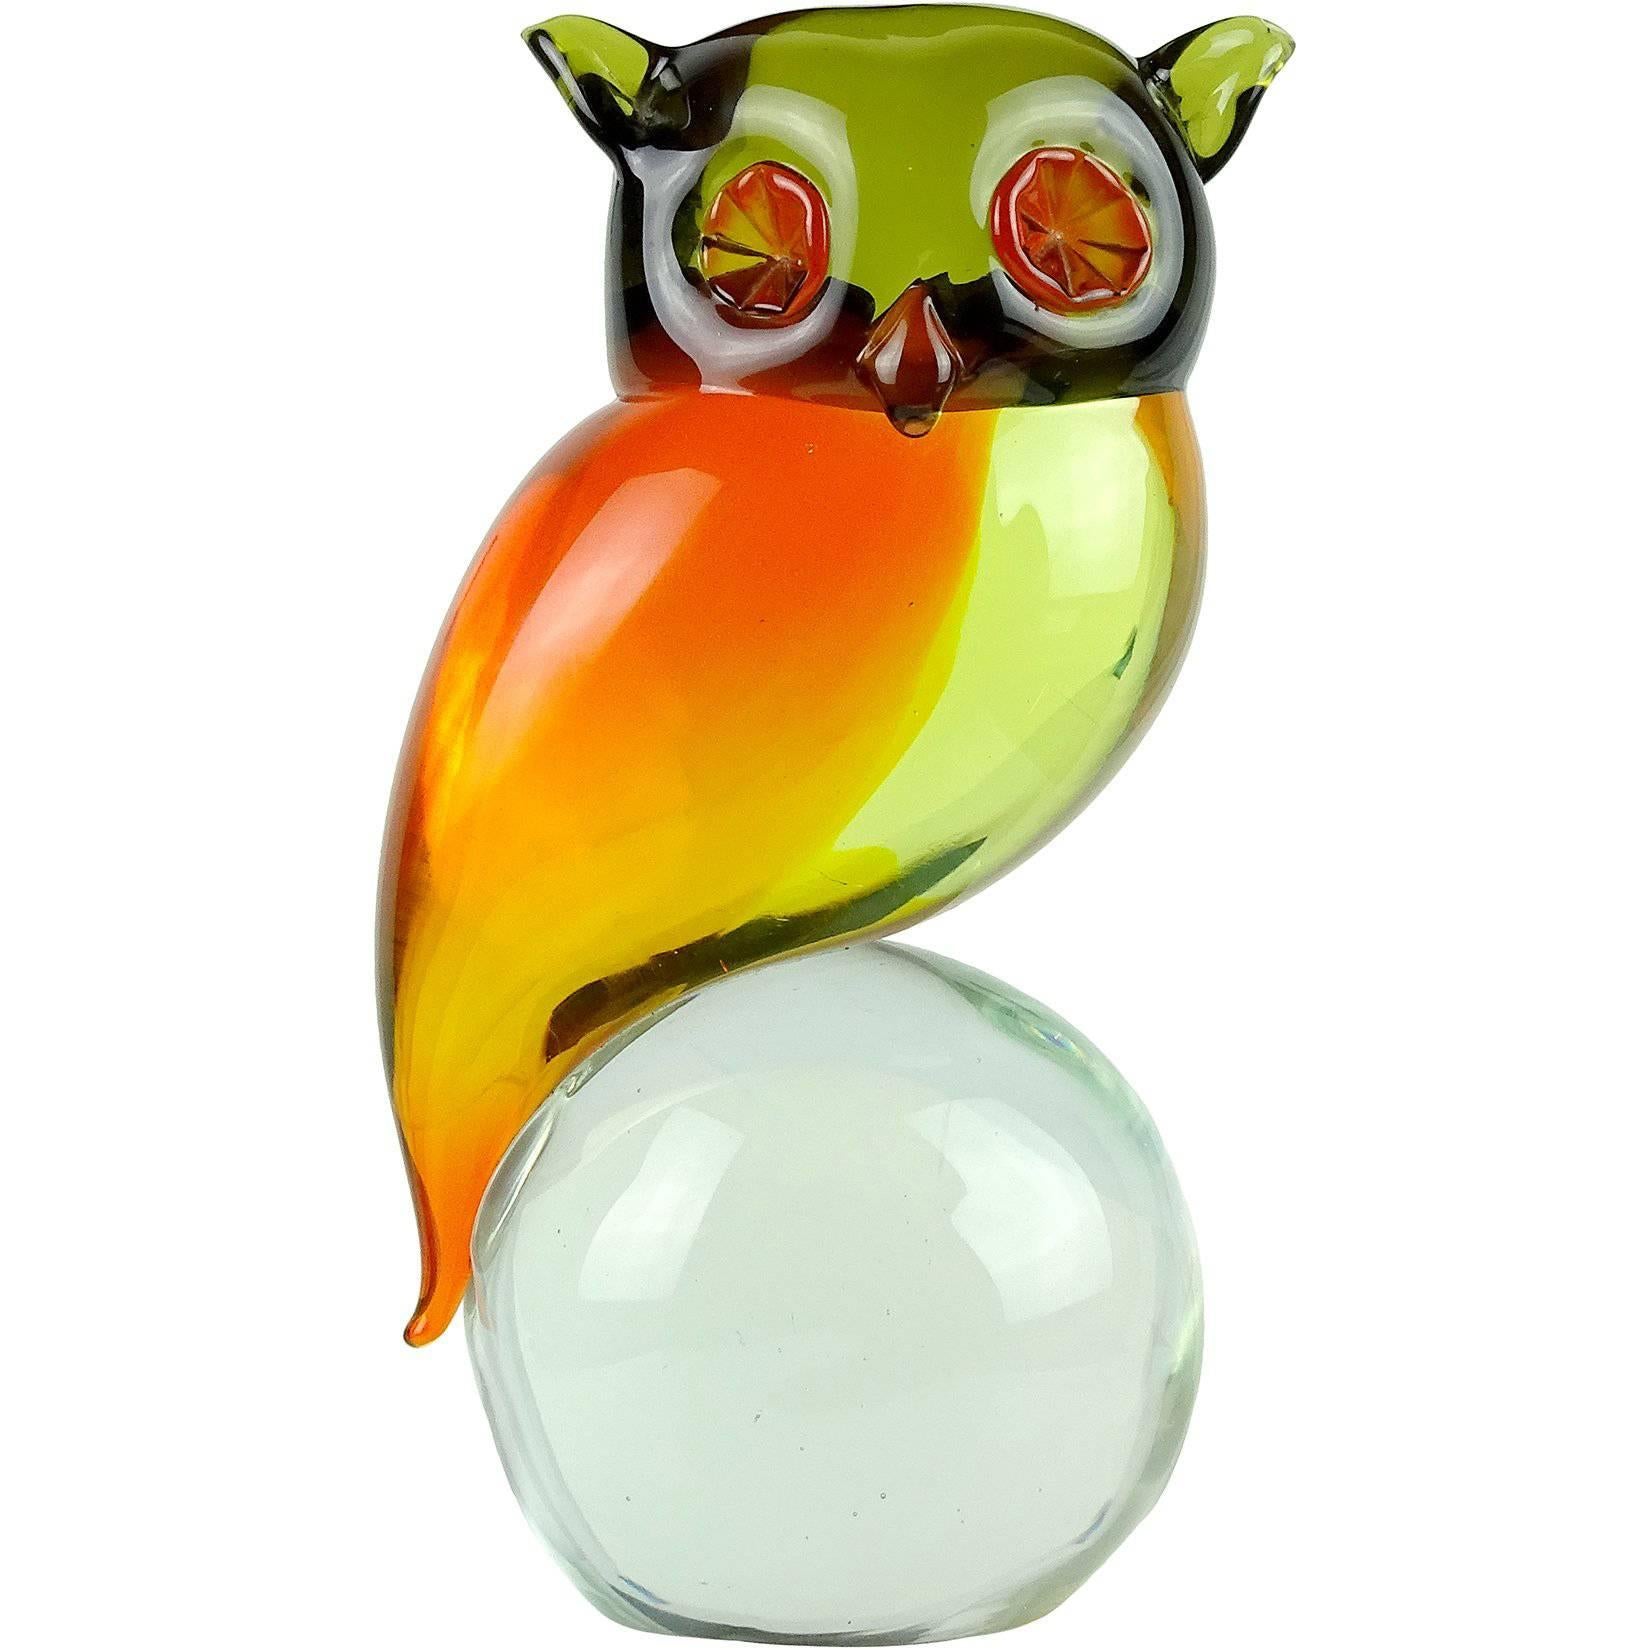 Murano Sommerso Orange Yellow Green Italian Uranium Art Glass Owl Bird Sculpture